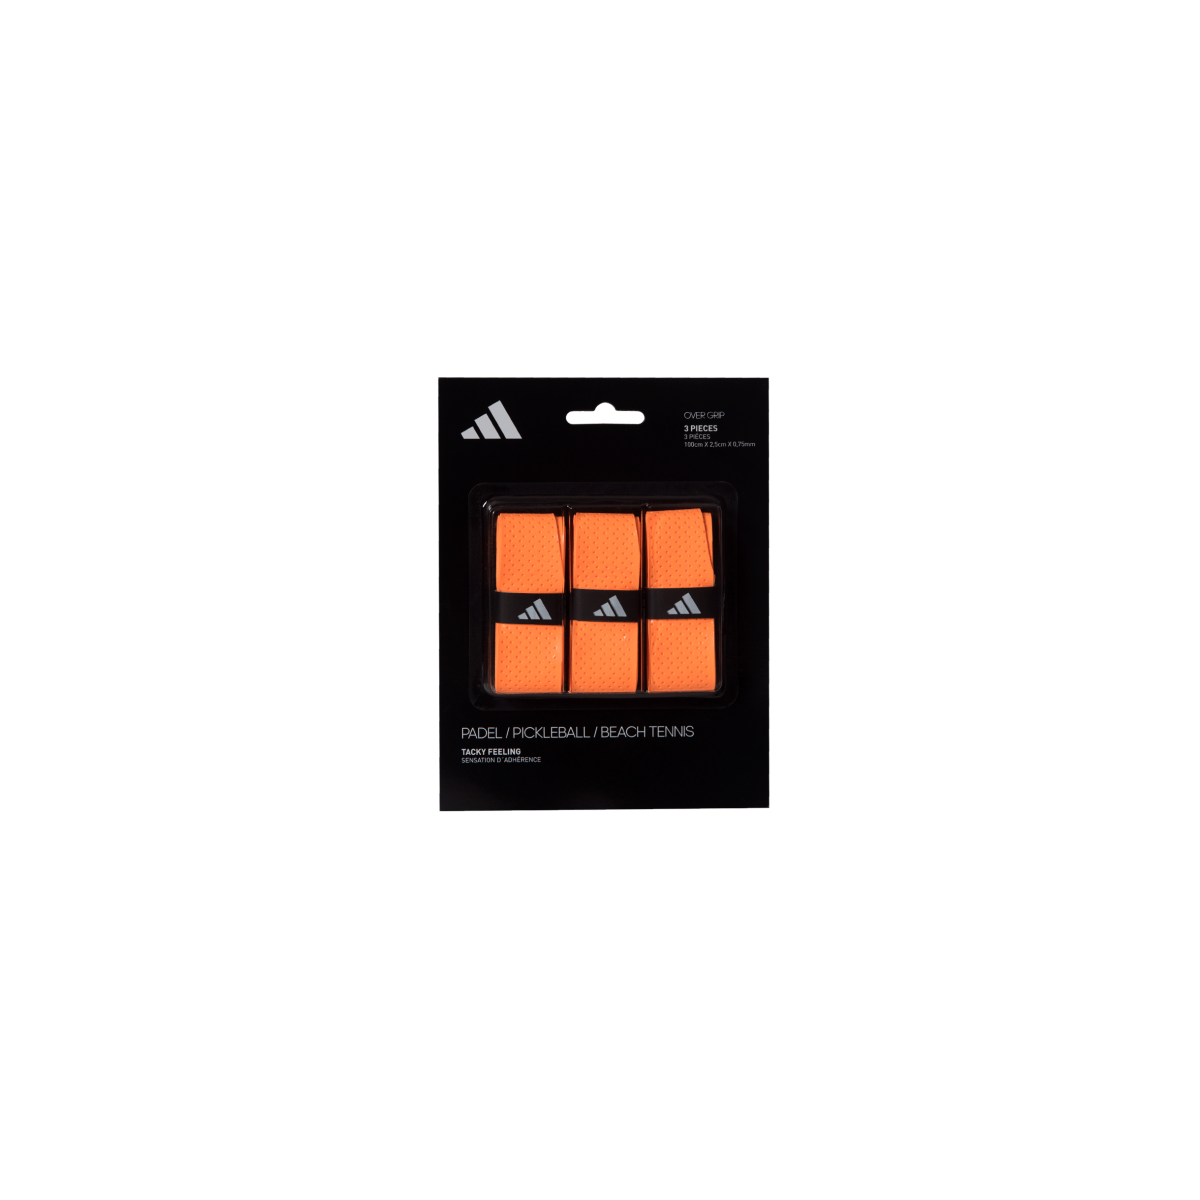 Adidas Surgrip x3 Orange